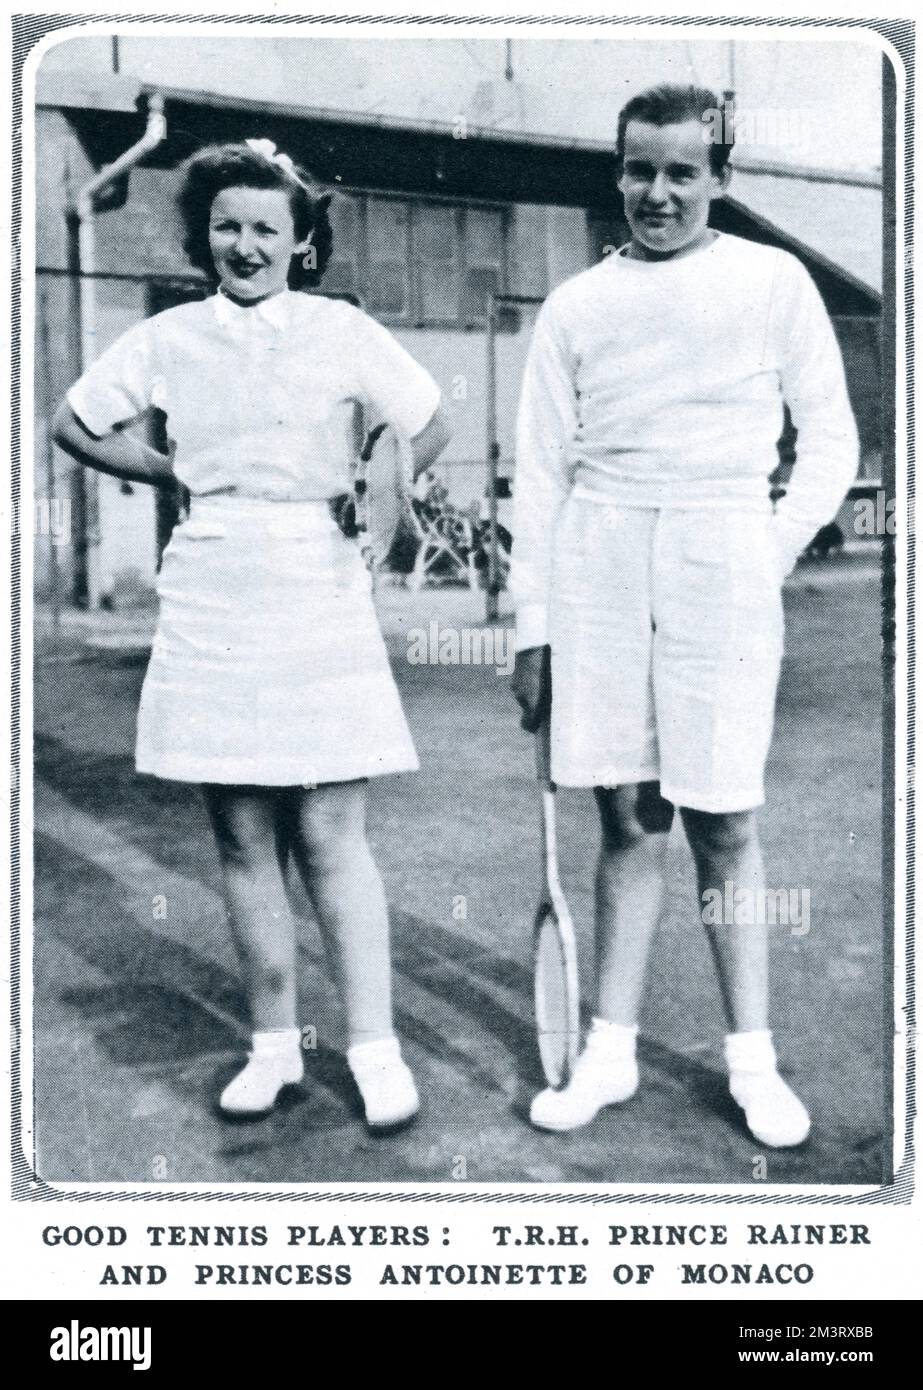 Il principe Rainier di Monaco (poi il principe Rainier III di Monaco) e sua sorella, la principessa Antoinette, raffigurati a Monte Carlo giocando a tennis. Data: 1938 Foto Stock